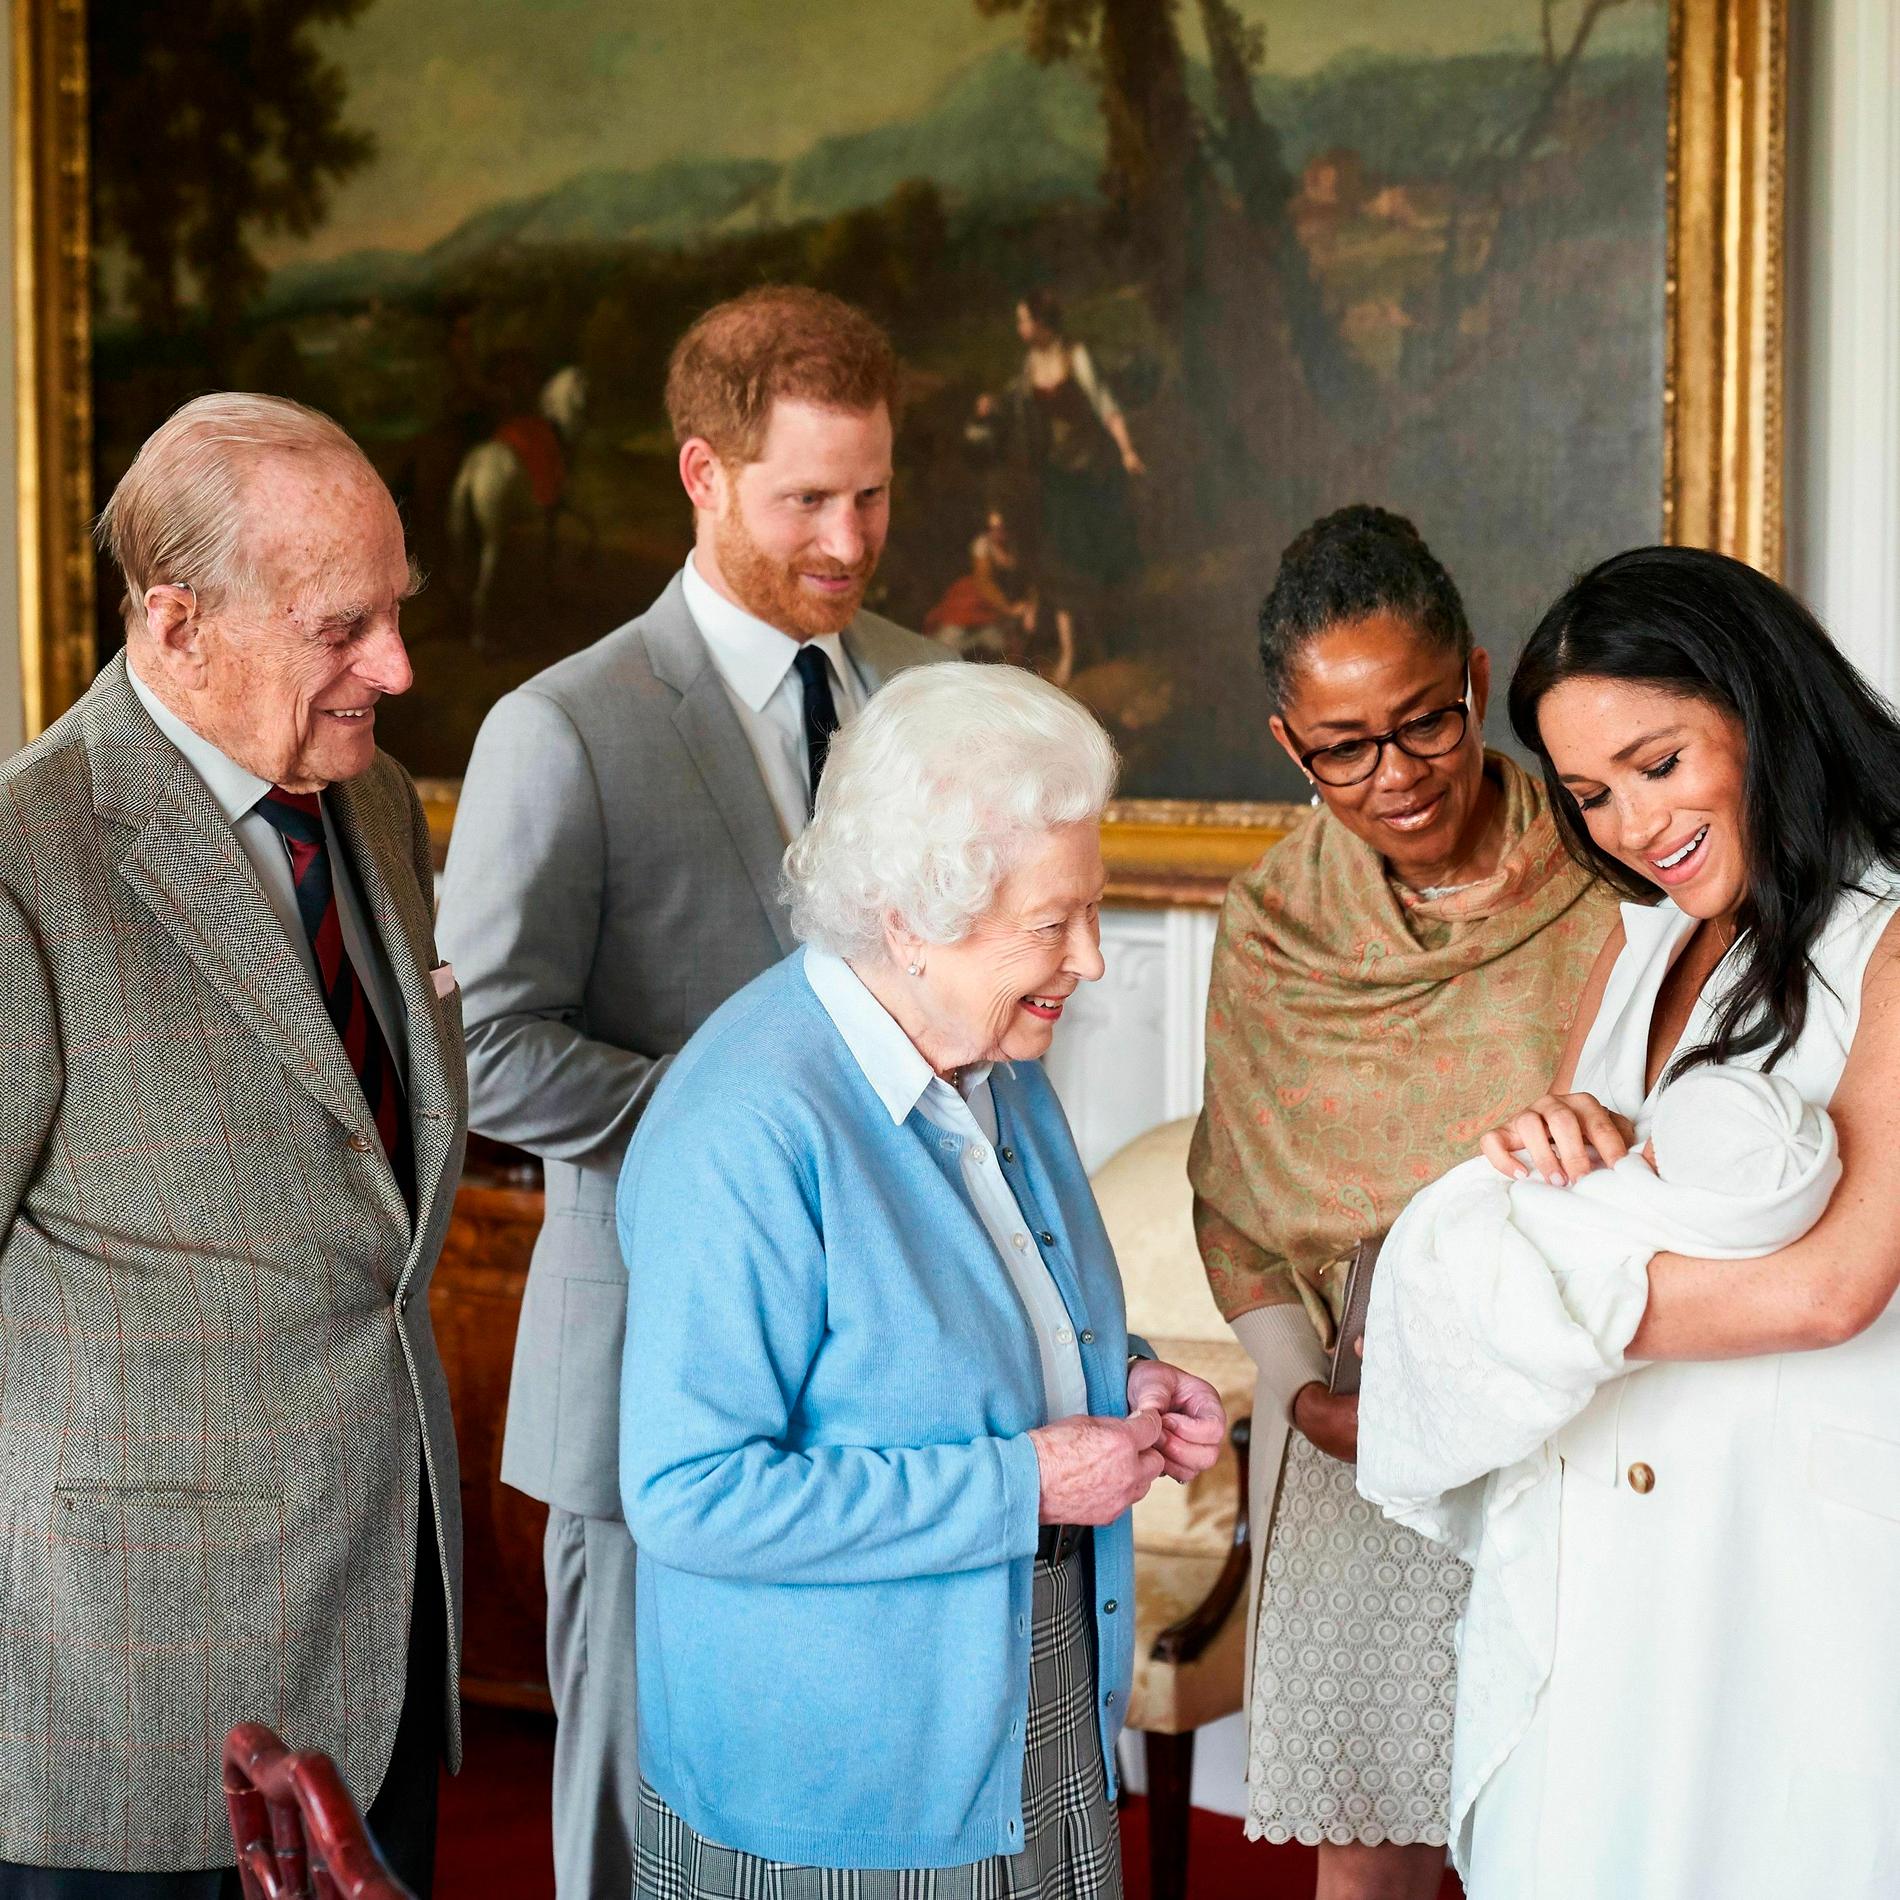 Drottning Elizabeth, och prins Philip, liksom Doria Ragland (mor till prins Harrys hustru Meghan) hälsar under överinseende av prins Harry och Meghan på Archie Harrison Mountbatten-Windsor. Arkivbild från maj 2019.